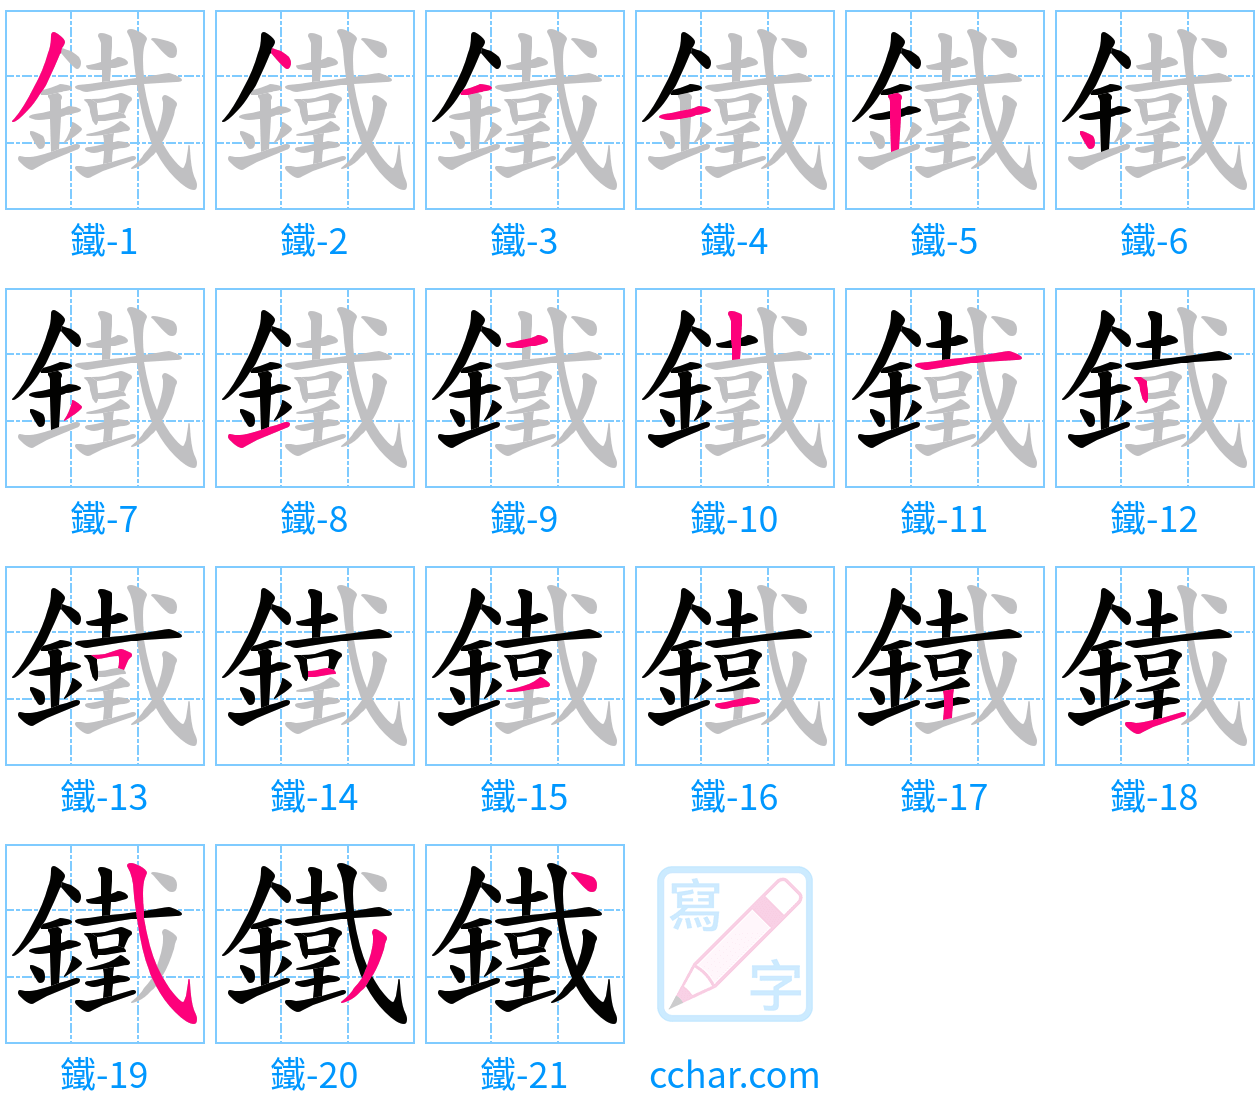 鐵 stroke order step-by-step diagram